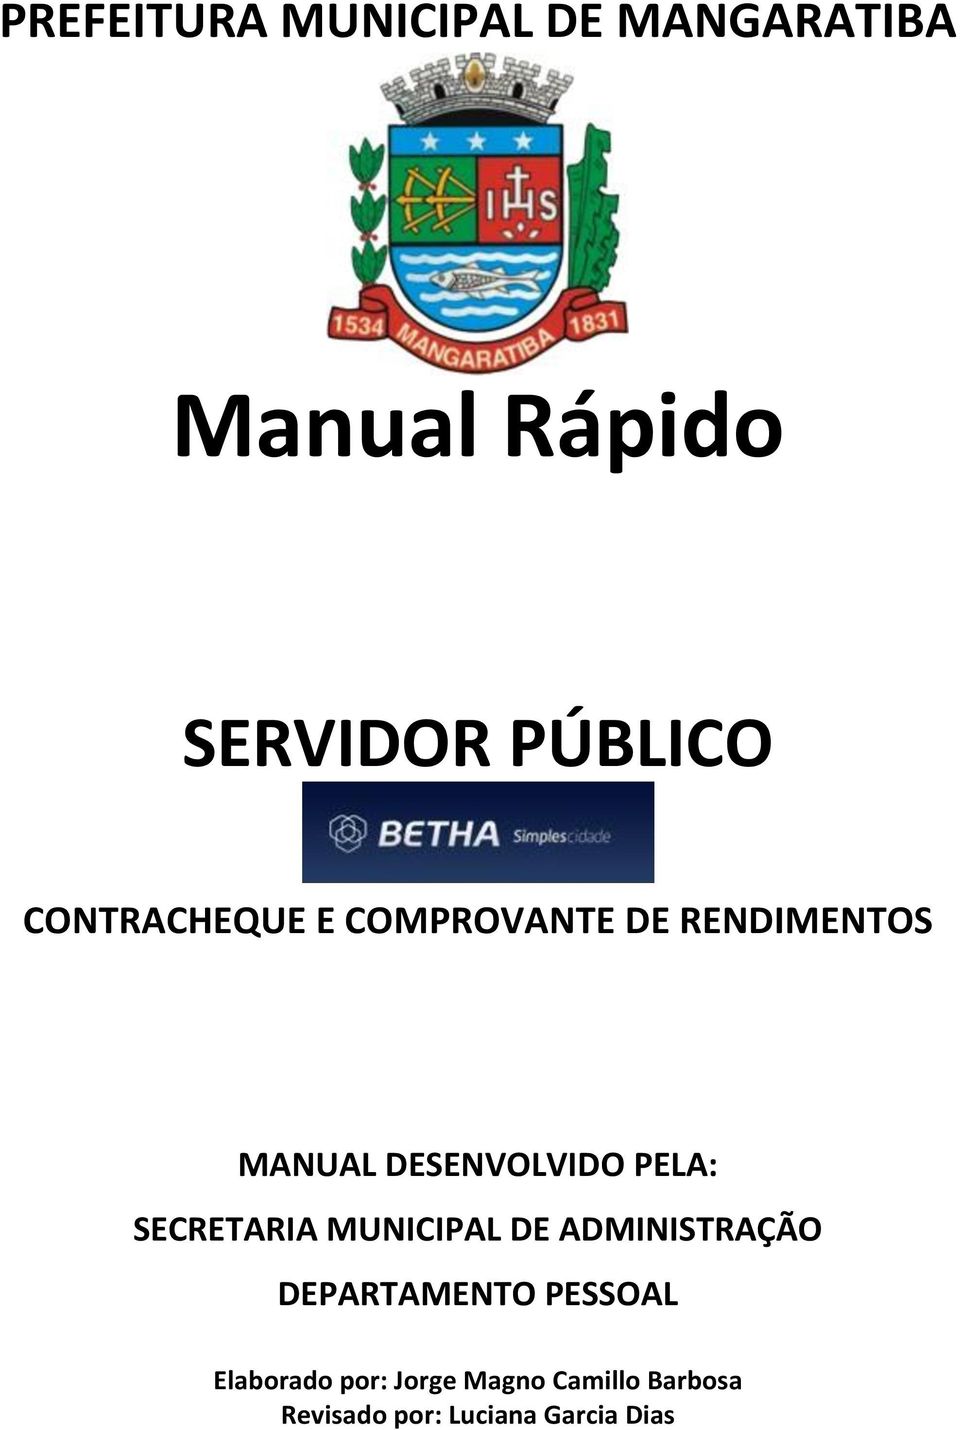 SECRETARIA MUNICIPAL DE ADMINISTRAÇÃO DEPARTAMENTO PESSOAL